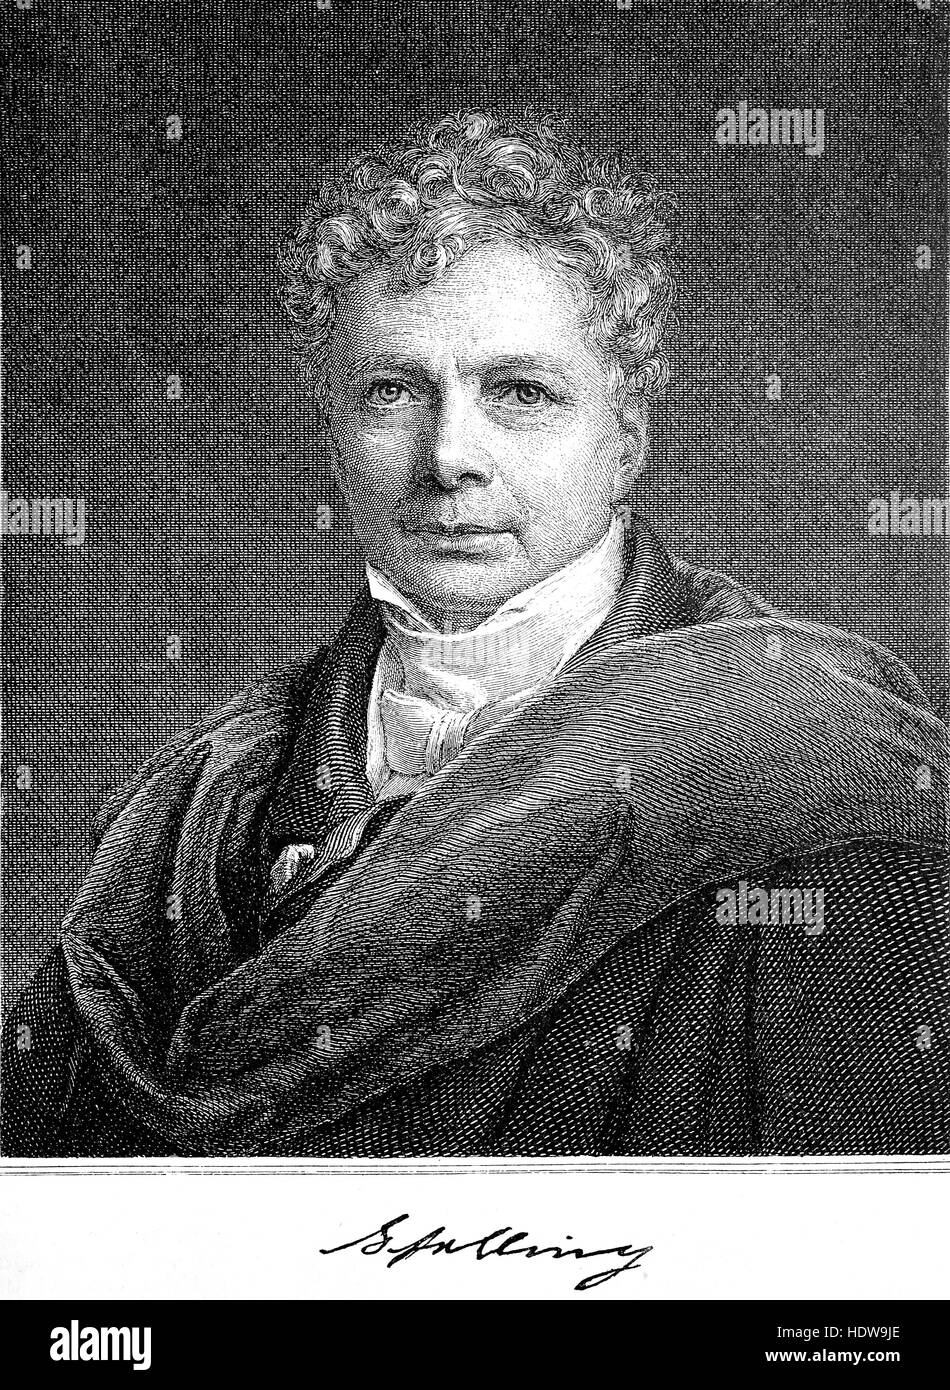 Friedrich Wilhelm Joseph Schelling, 1775-1854, un philosophe allemand, gravure sur bois de l'année 1880 Banque D'Images